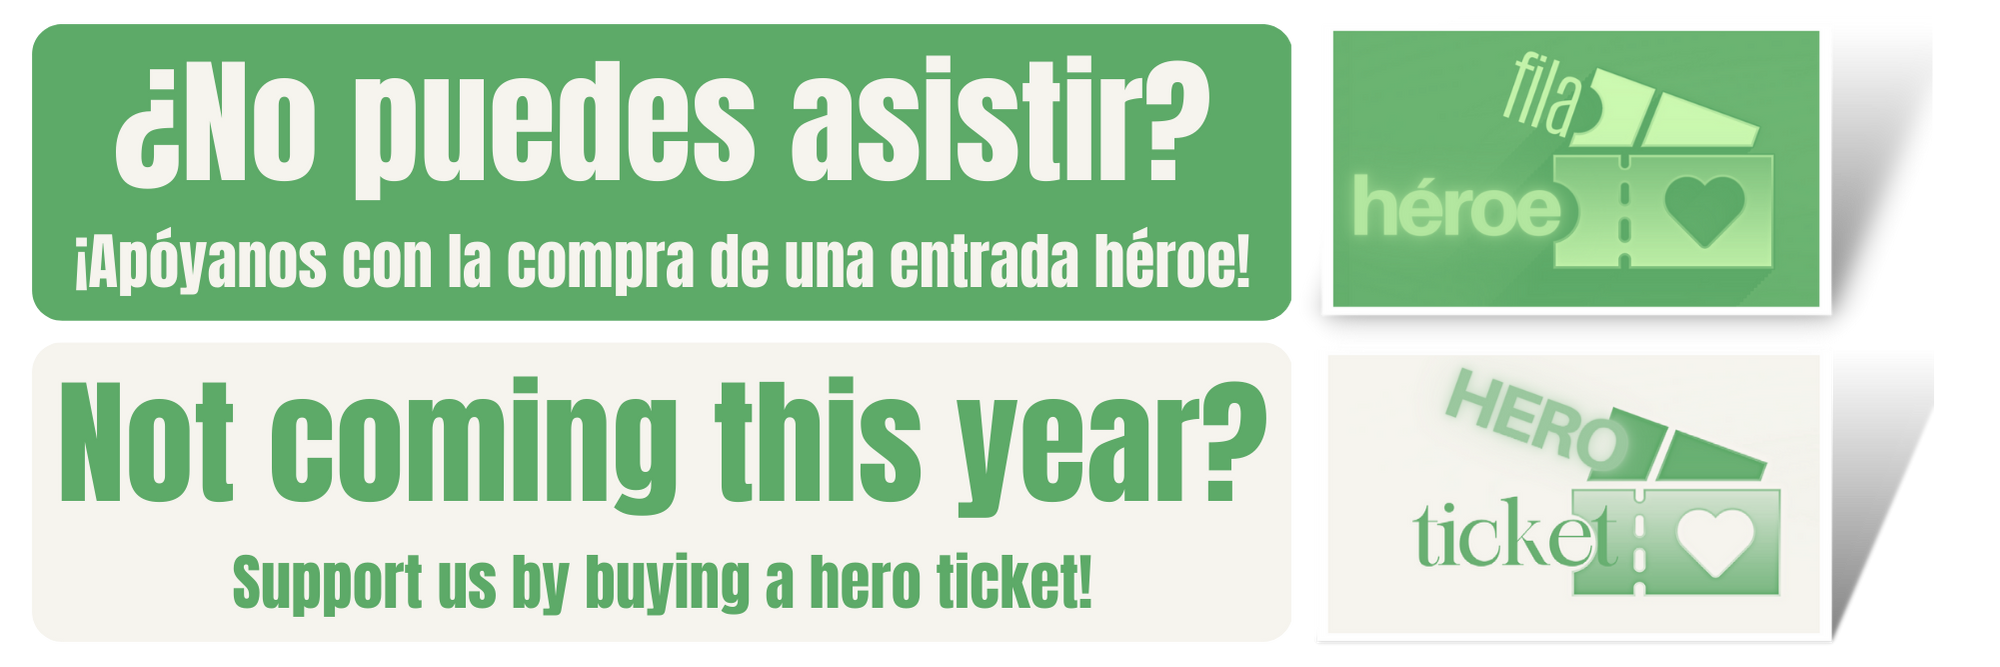 ¡Apóyanos con la compra de una entrada héroe! Support us by buying a hero ticket!